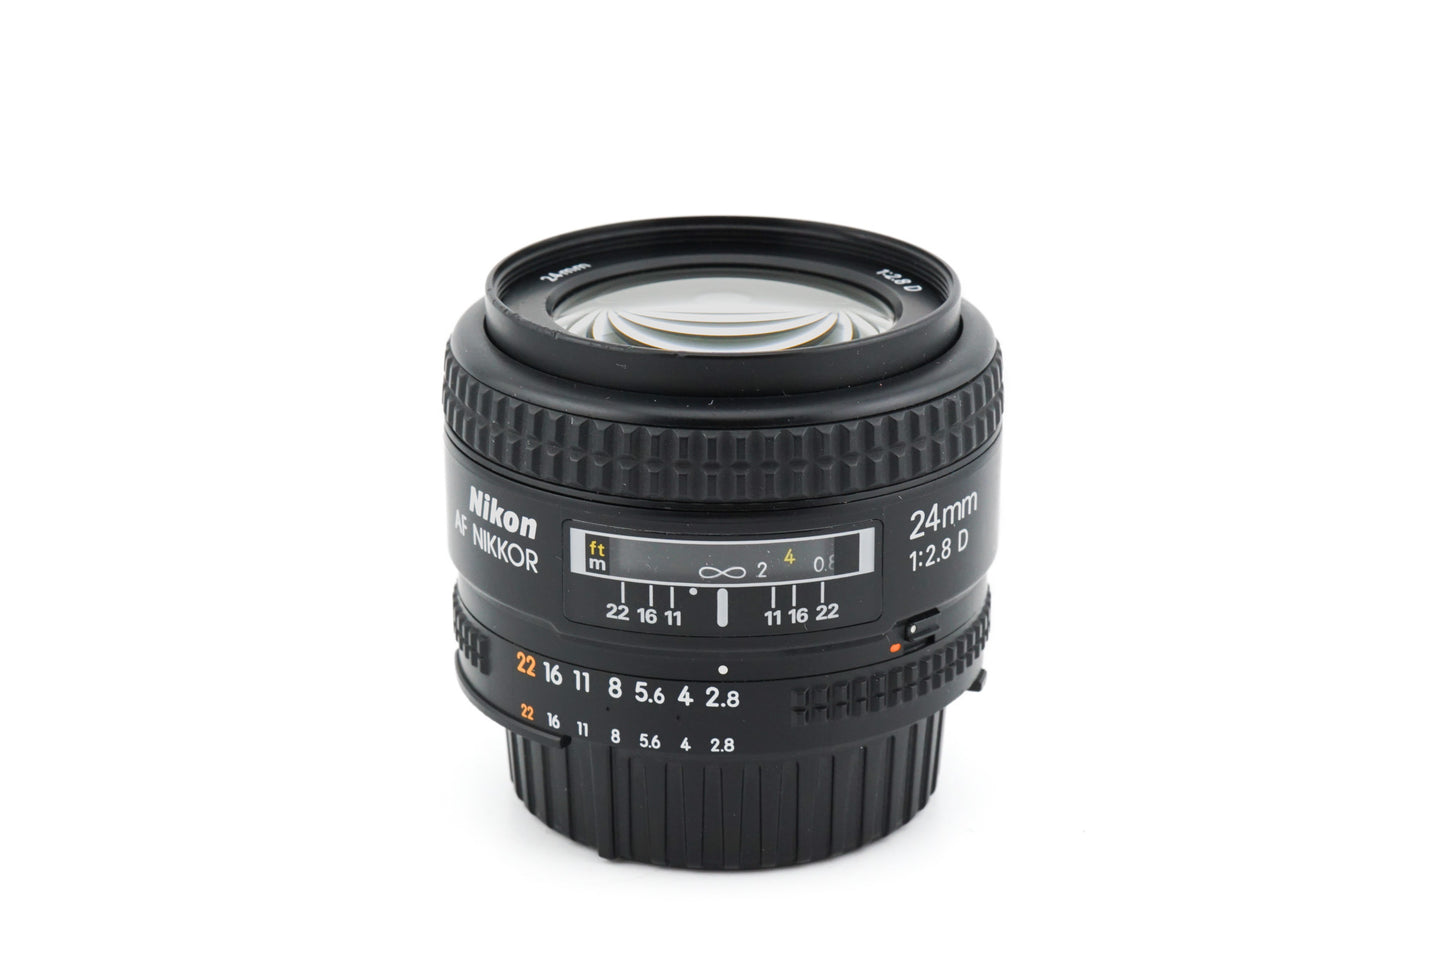 Nikon 24mm f2.8 D AF Nikkor - Lens